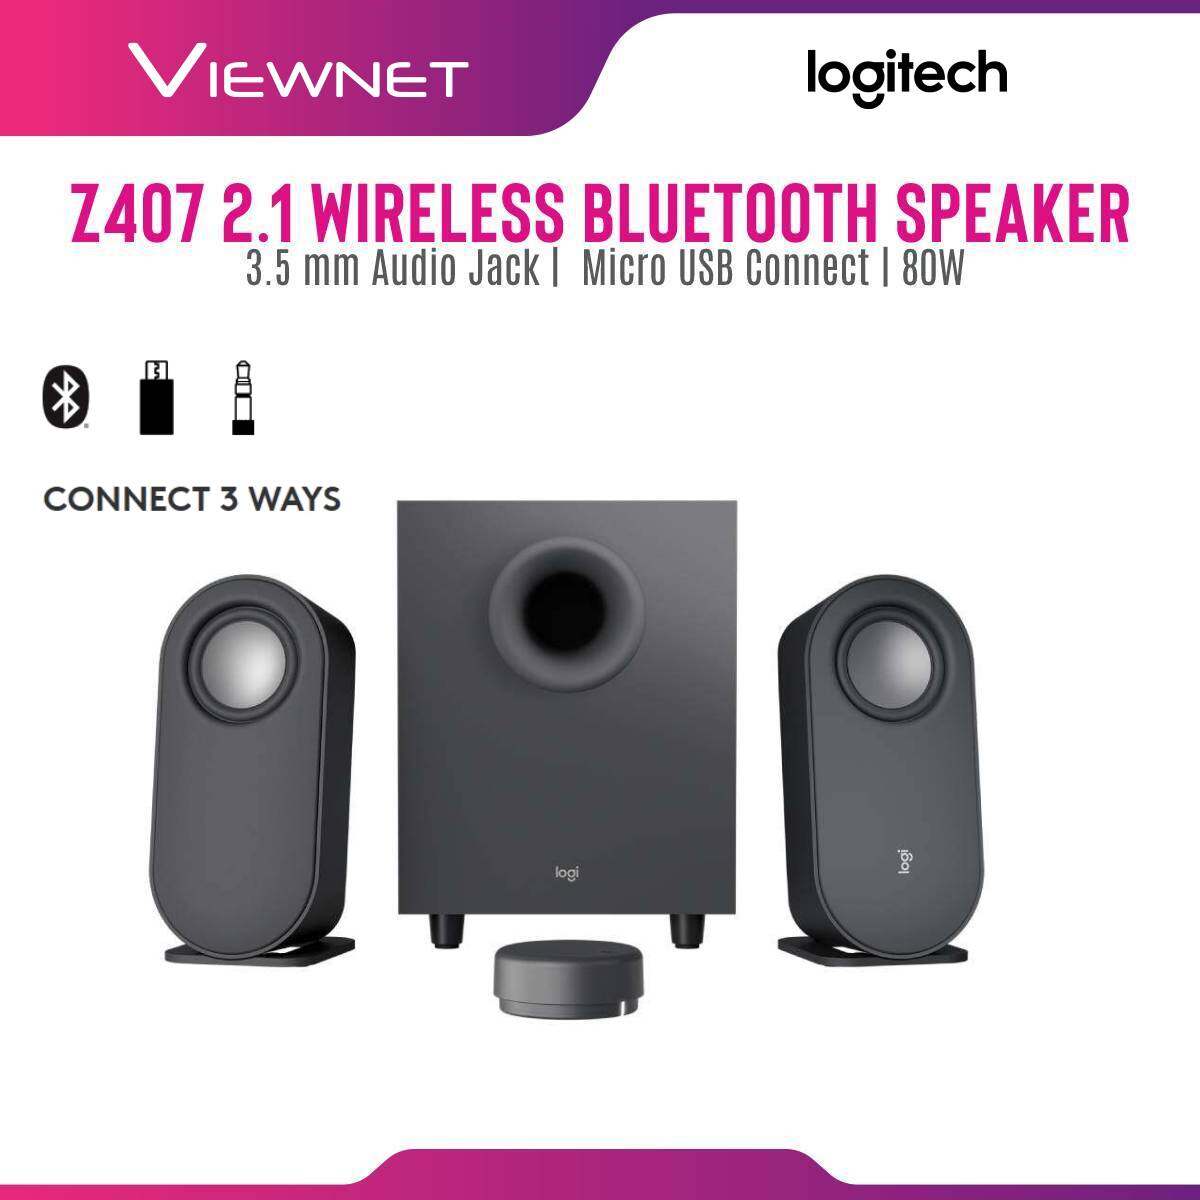 Logitech Z407 2.1 Wireless Bluetooth Speaker with 3.5 mm Audio Jack, Micro USB Connect, 80W